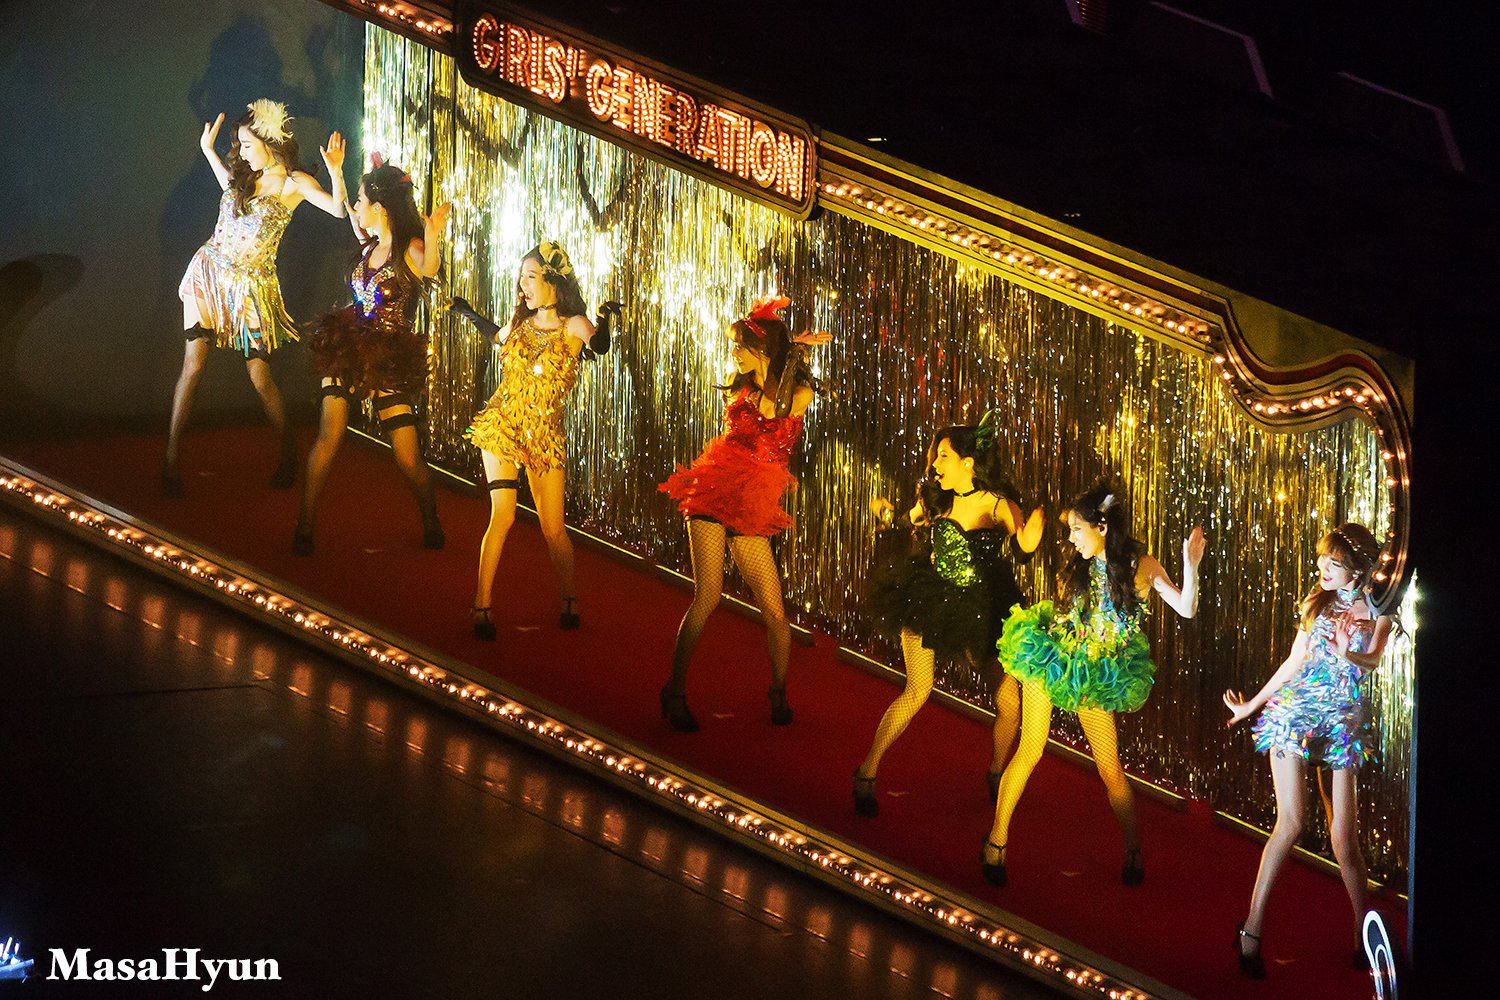 [PIC][09-12-2014]Hình ảnh mới nhất từ "GIRLS' GENERATION THE BEST LIVE AT TOKYO DOME" của SNSD  - Page 3 PvKumw_0hP-3000x3000